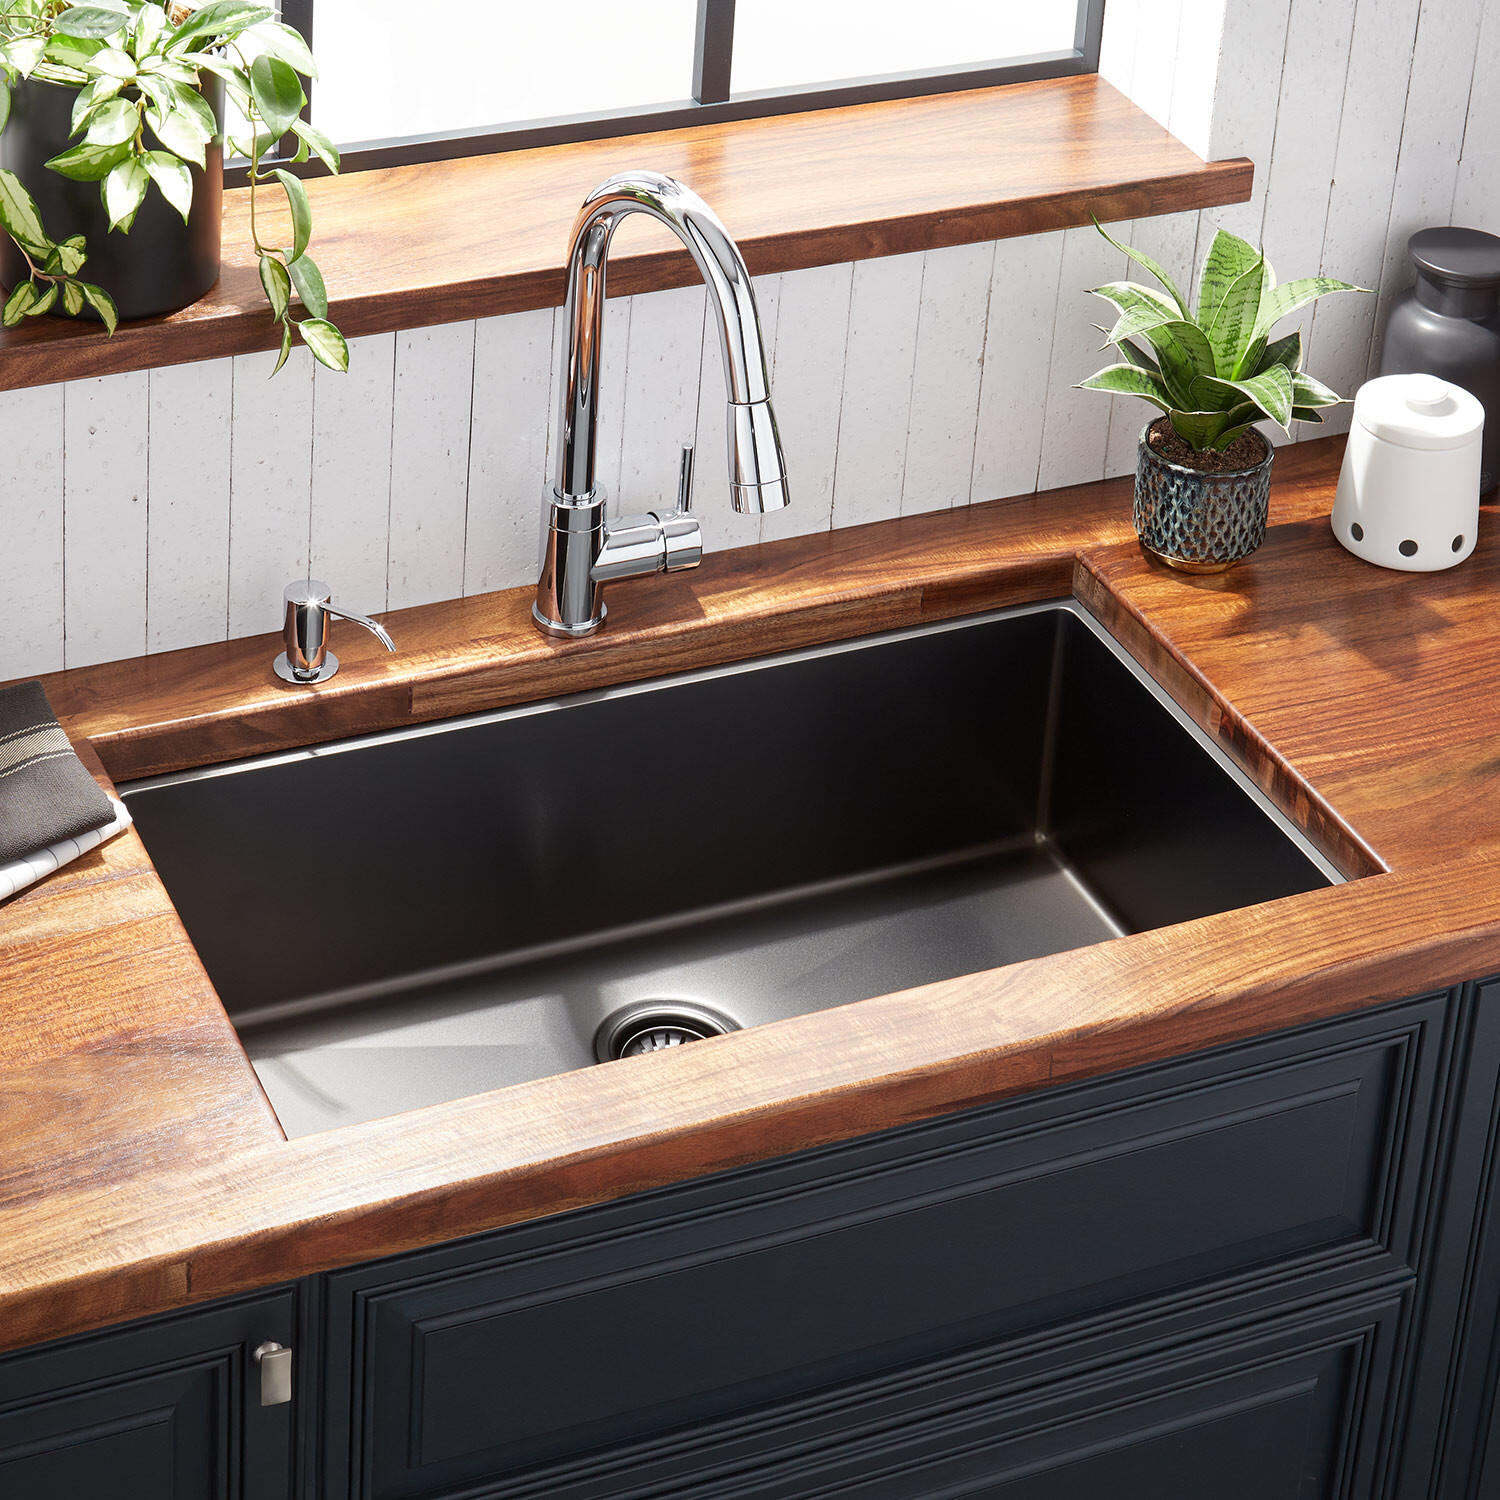 Bồn rửa âm bàn có thiết kế gắn chìm dưới mặt bàn bếp, tiết kiệm không gian, dễ vệ sinh mặt bàn và tính thẩm mỹ cao.